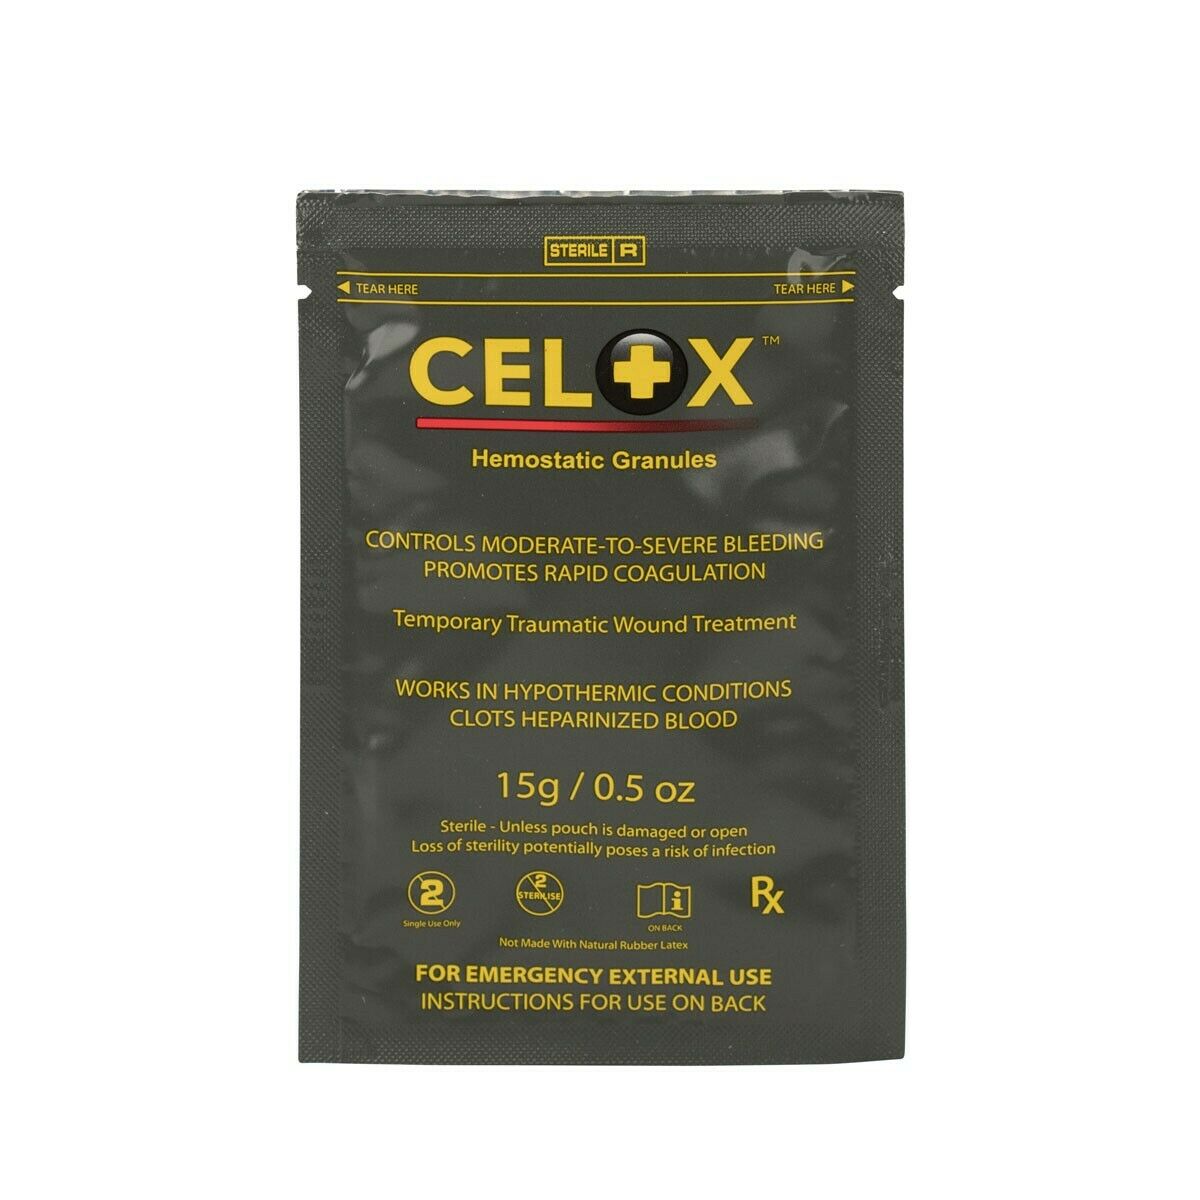 Celox 15g Granule Pack - Stops Bleeding Fast ~ 2025 expiration fresh stock